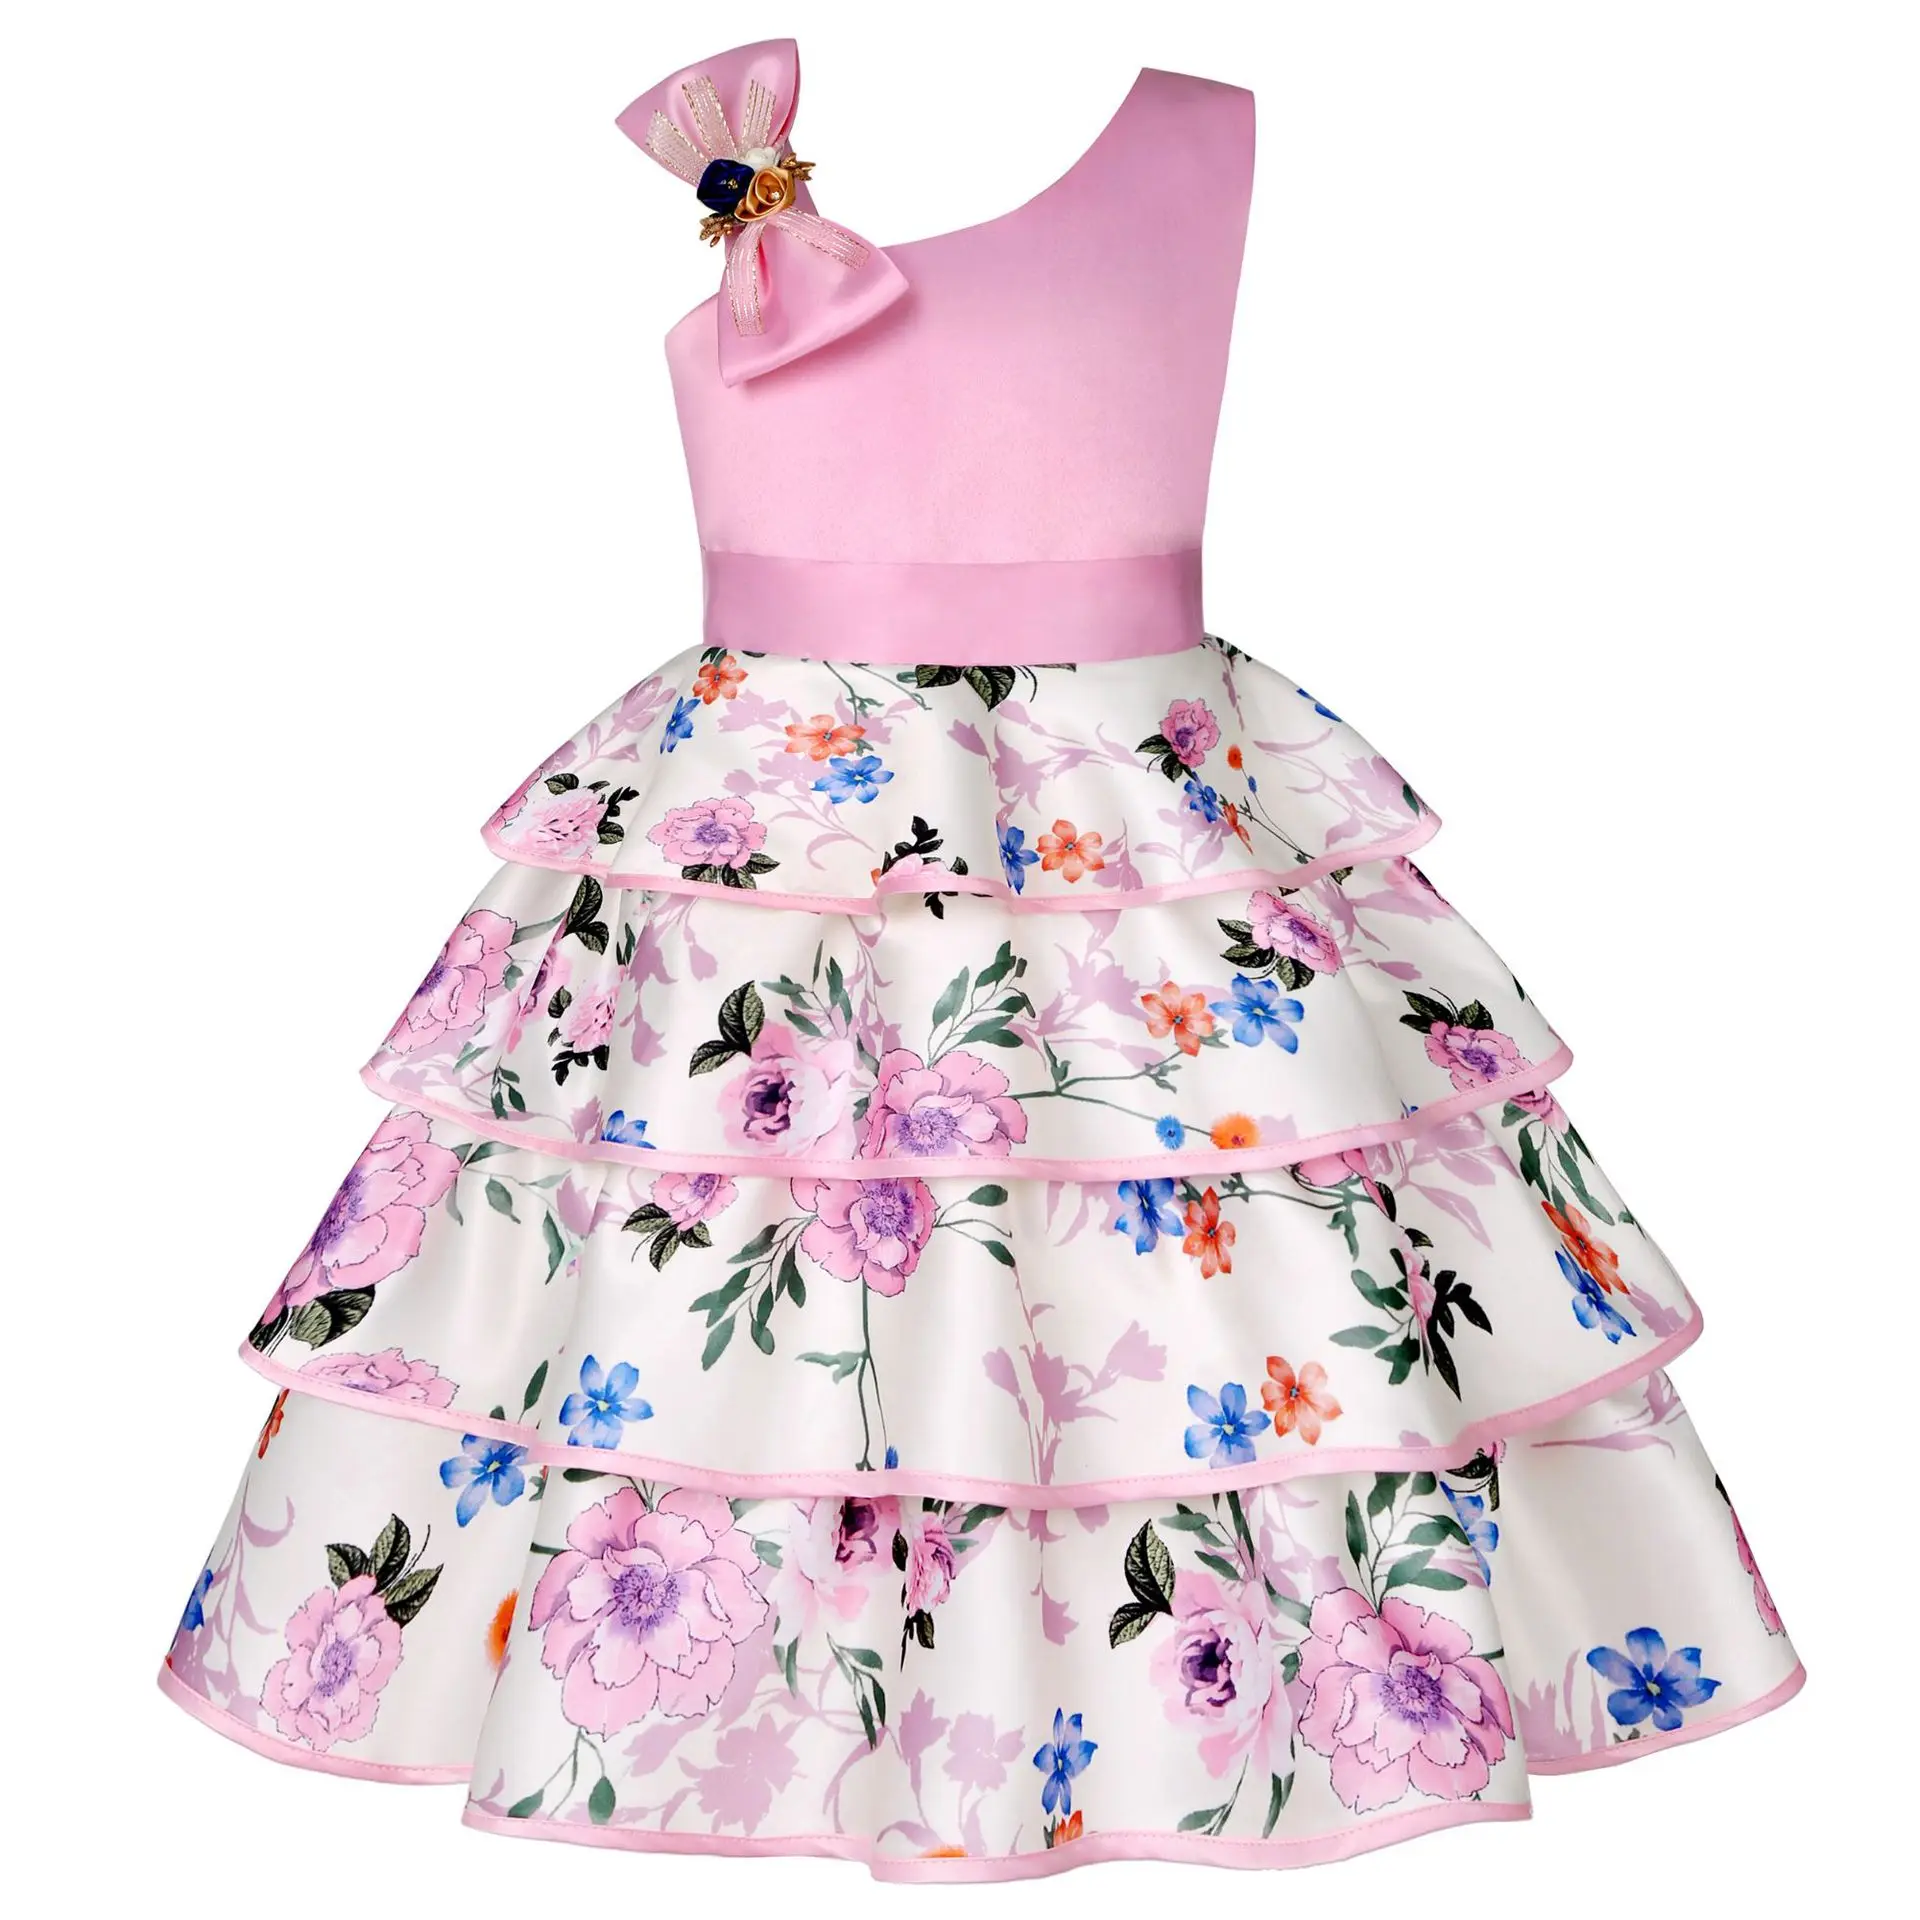 

Платье с цветочным узором для девочек многослойное платье принцессы с цветочным принтом для девочек, 4 цвета, вечерние летние платья на свадьбу детская одежда, 6, 8, 10 лет